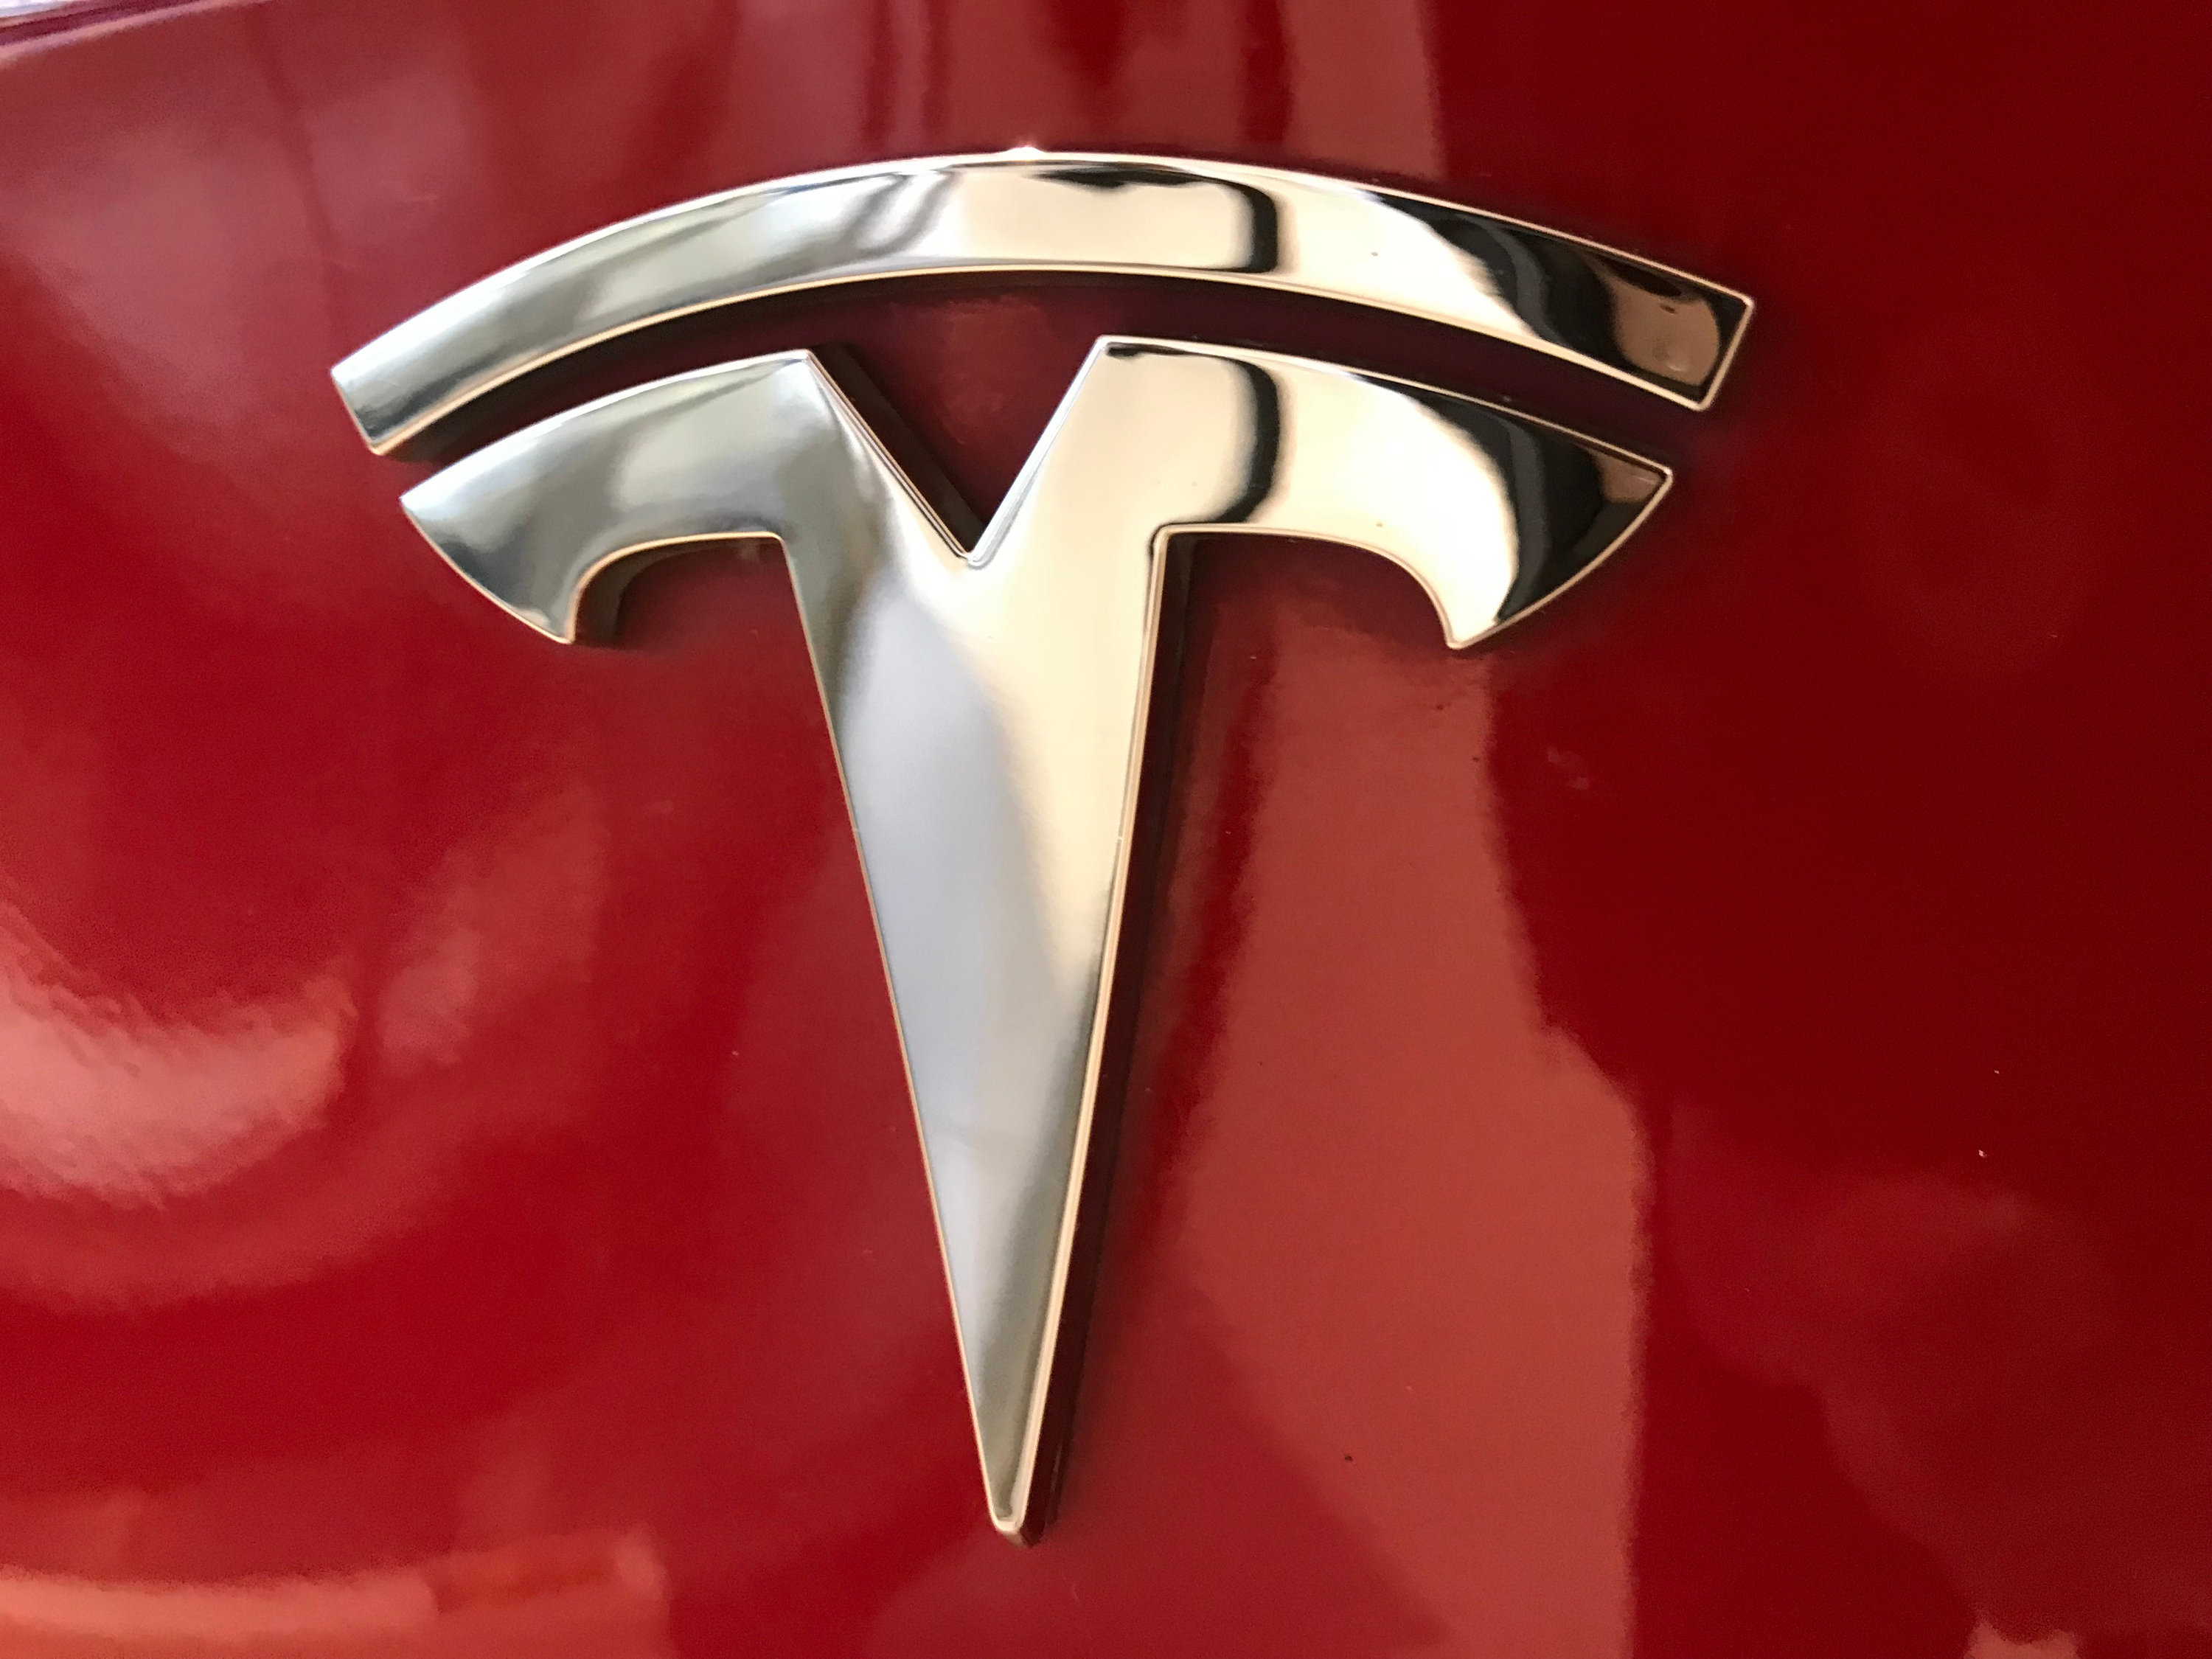 Tesla dépose un brevet sur une méthode permettant d'extraire le lithium à moindre coût